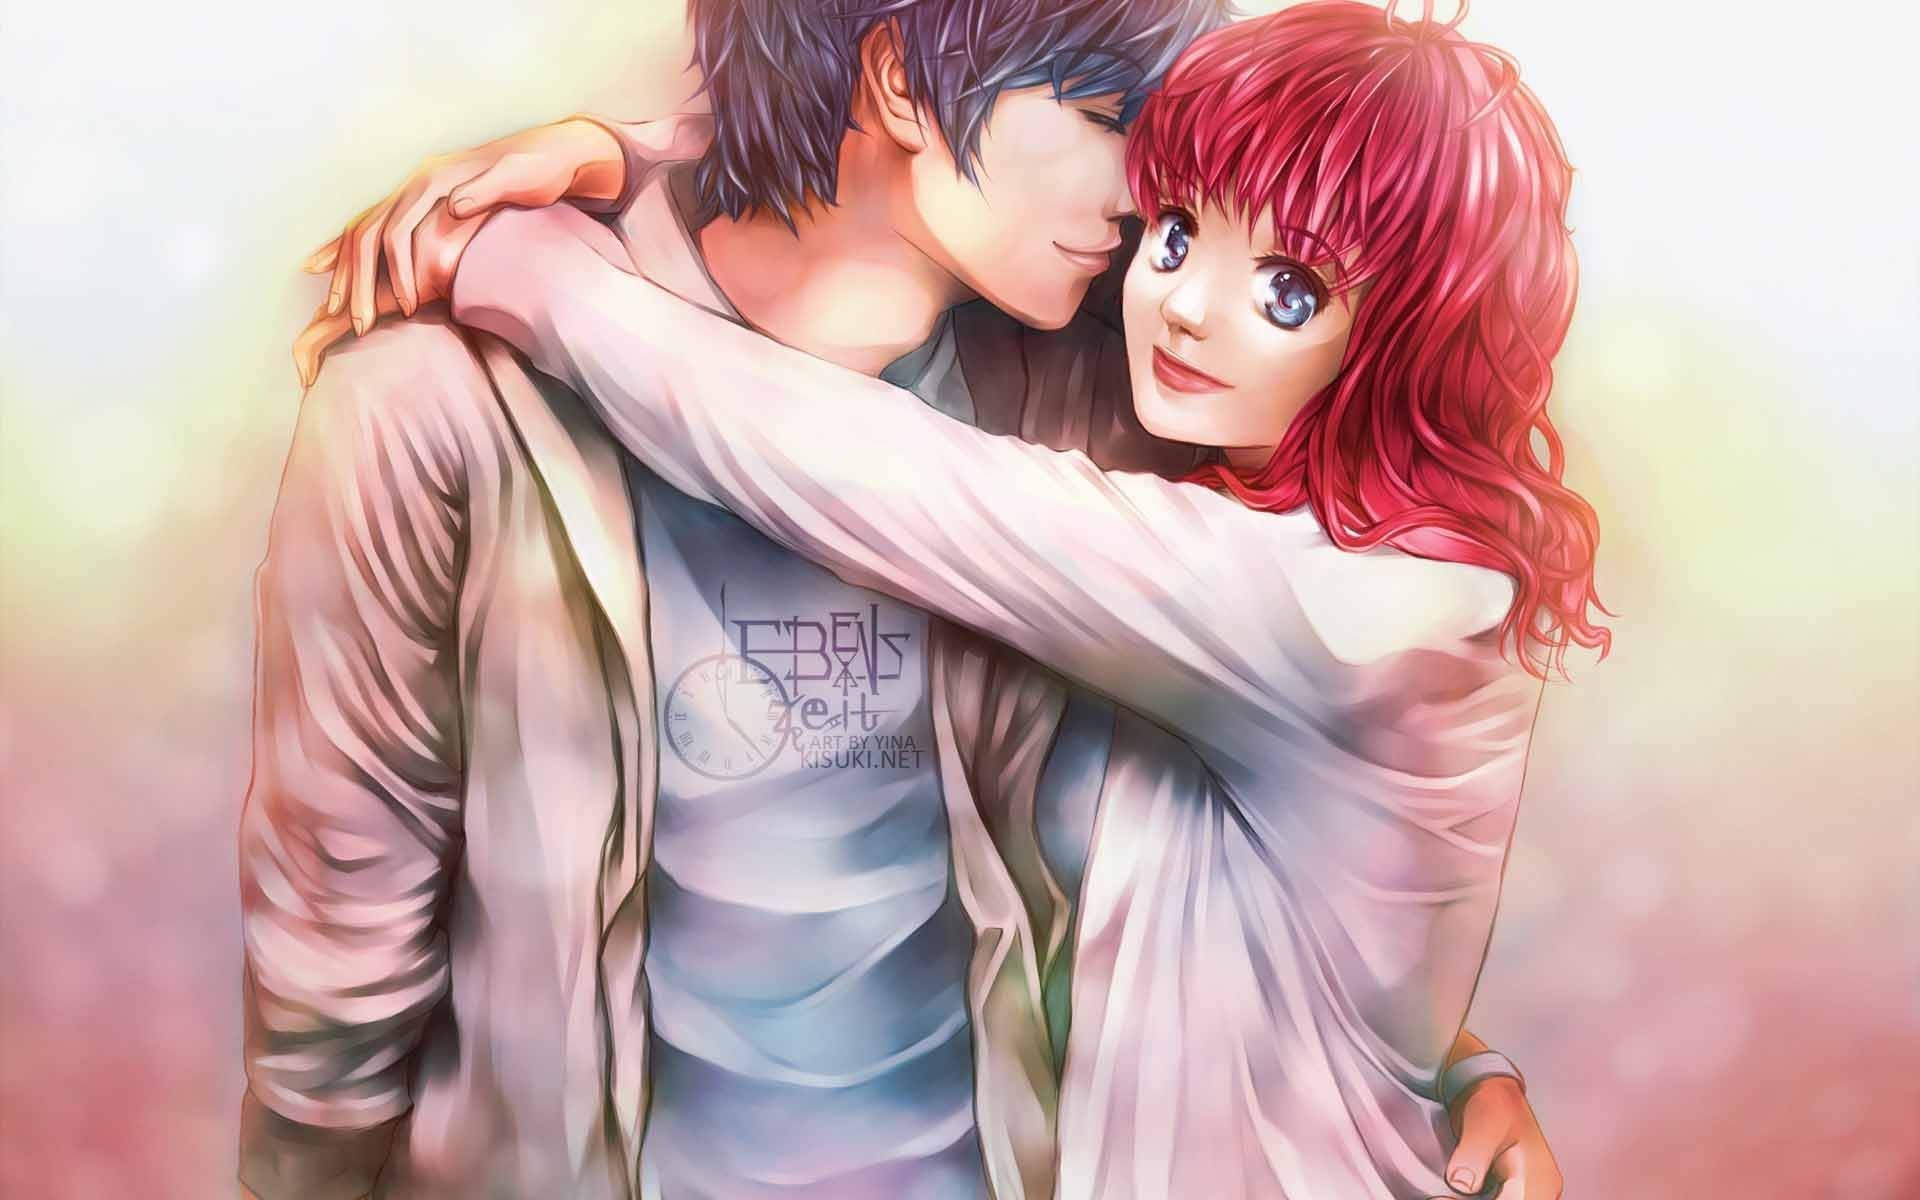 Anime Hug Boy And Girl With Jacket Wallpaper